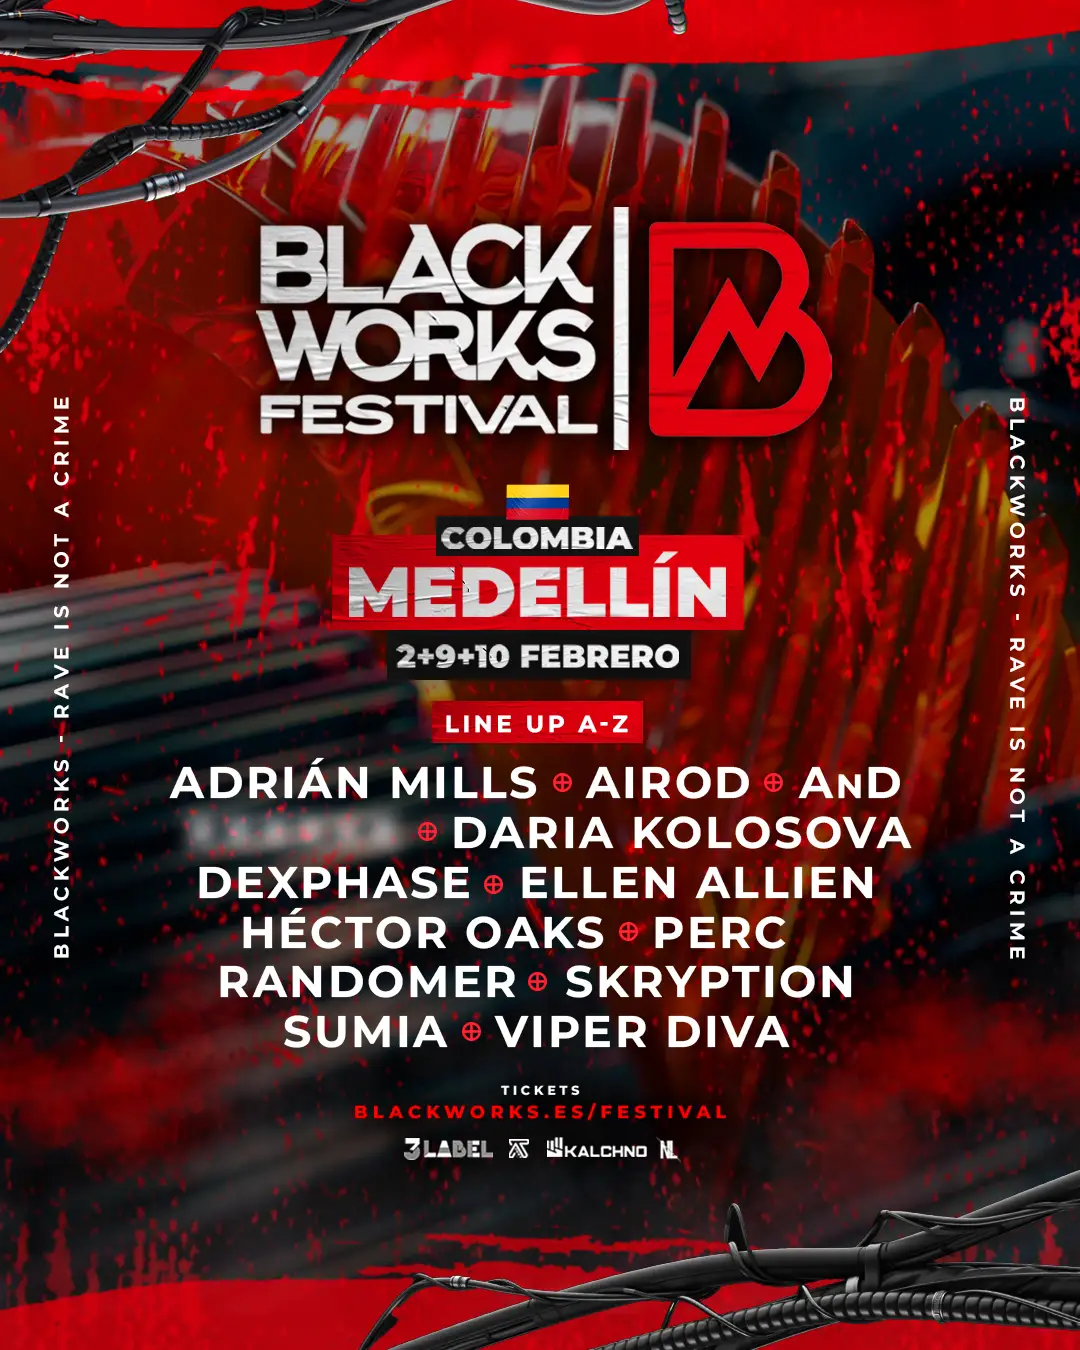 Blackworks Festival Medellín